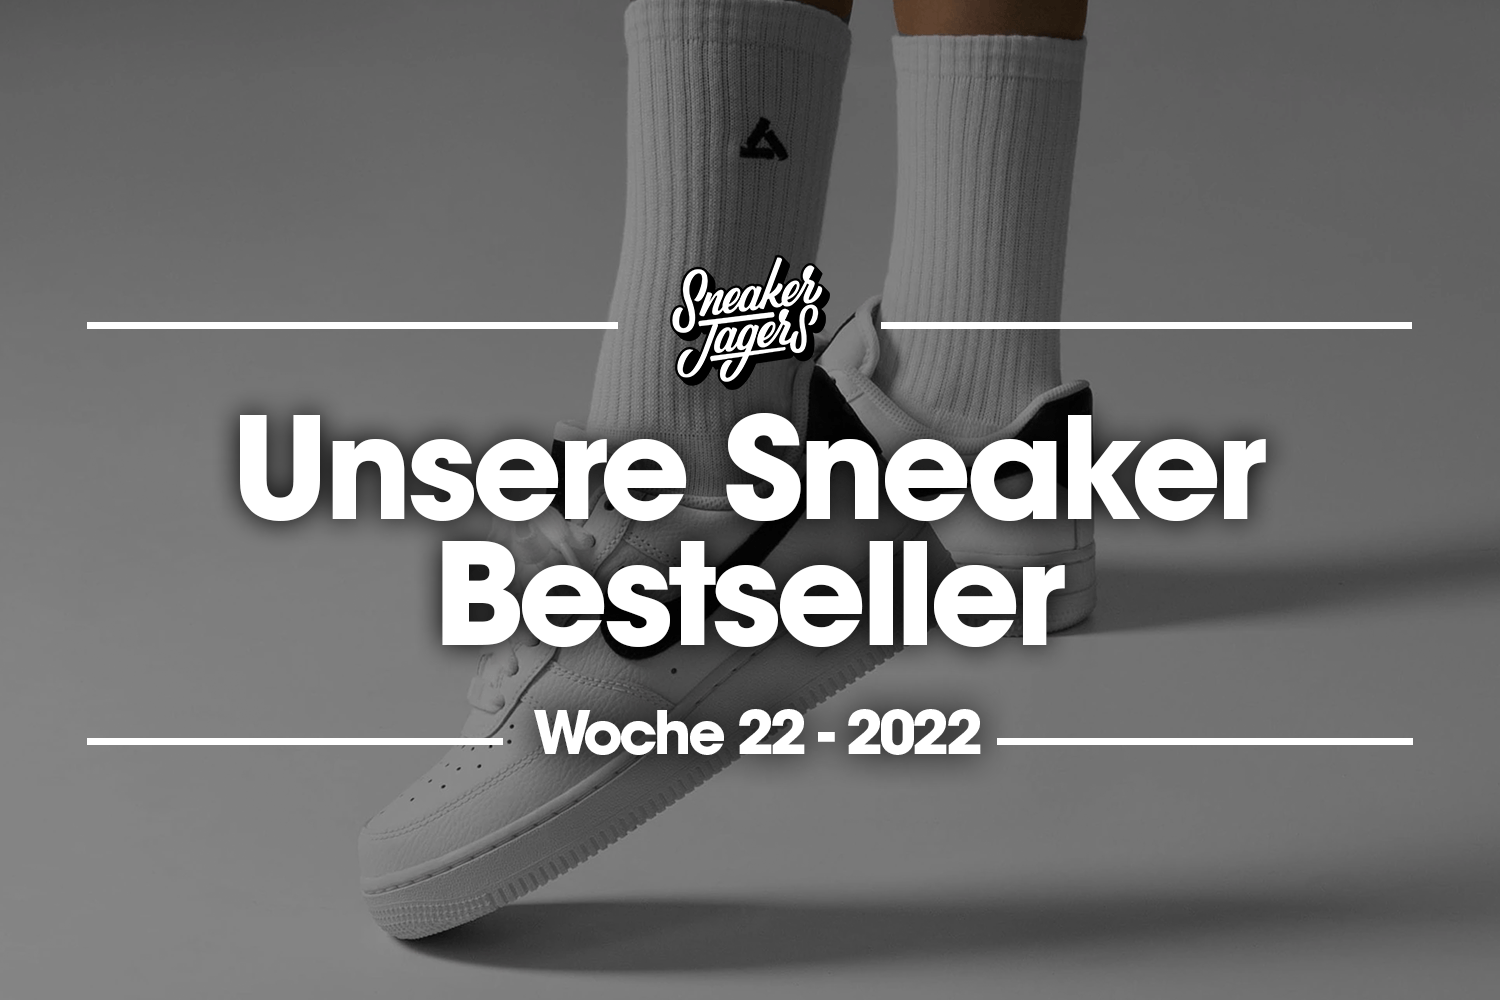 Unsere Sneaker Bestseller - Woche 22 - Das ist im Trend